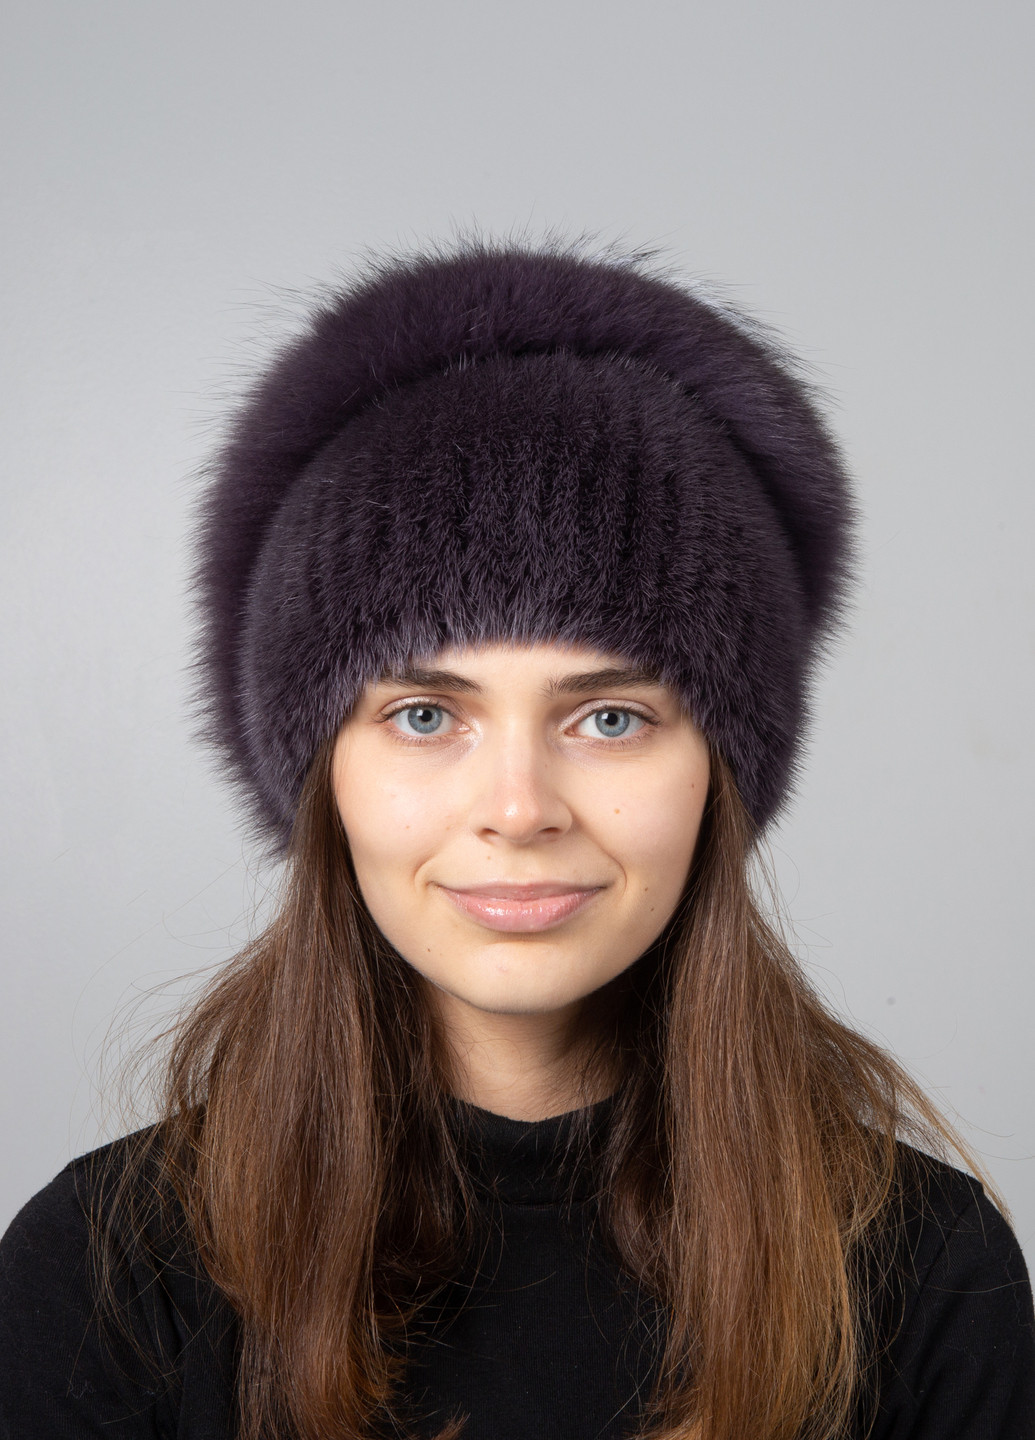 Женская шапка из натурального меха норки на вязаной основе с помпоном Меховой Стиль улитка (254784402)